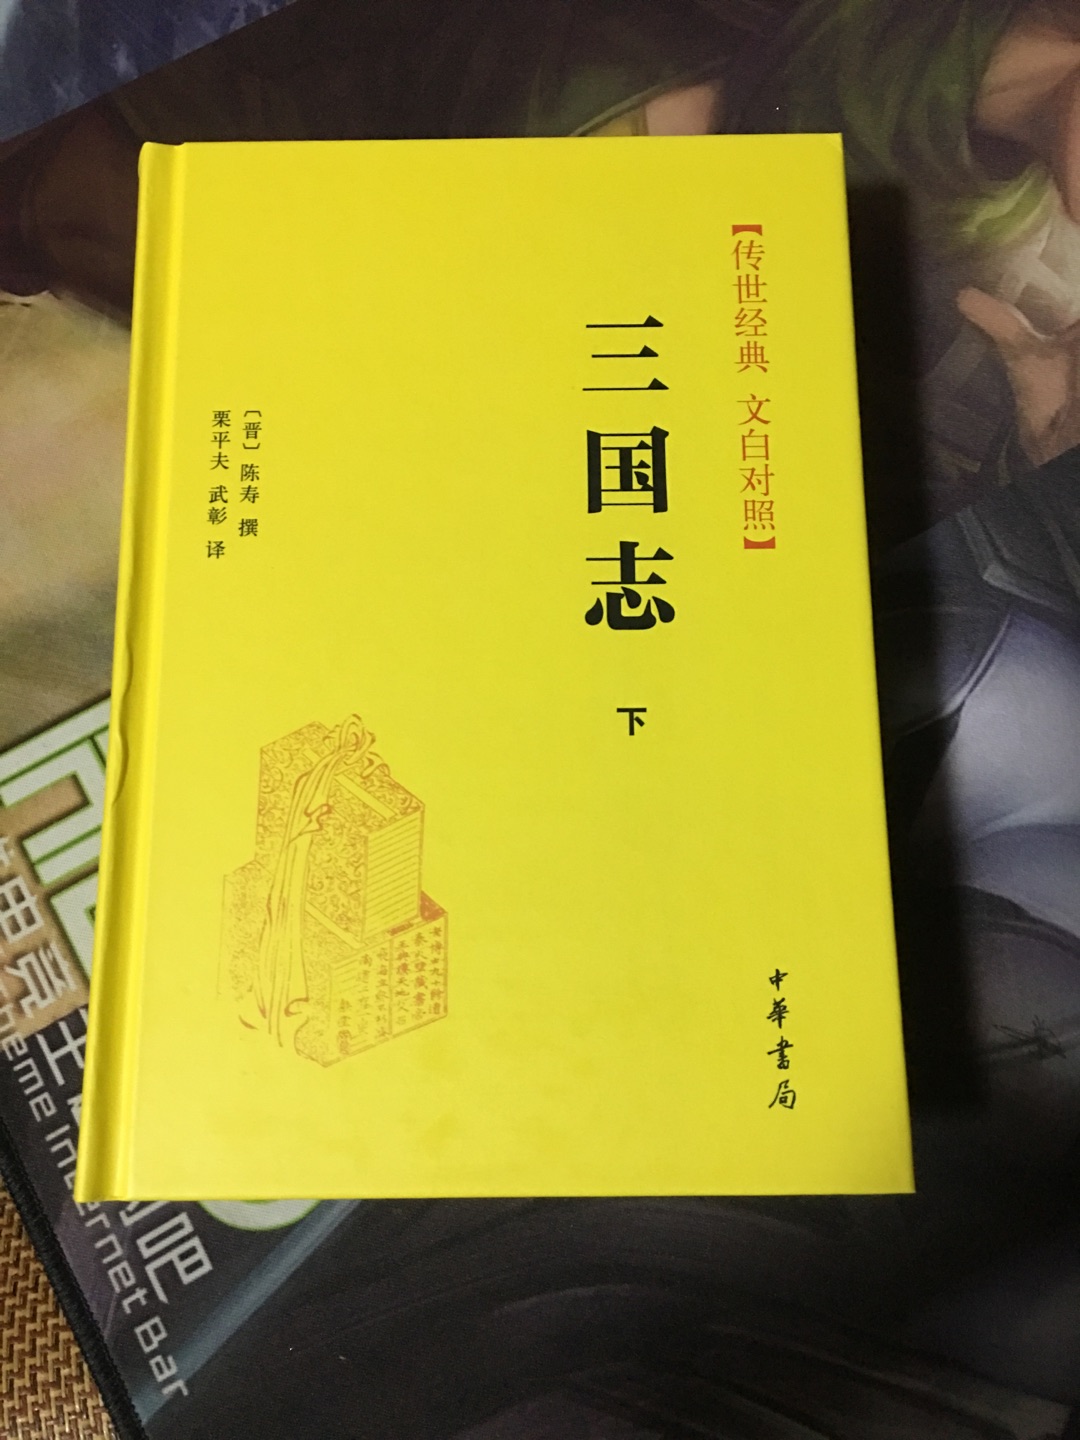 作为一个历史研究生，这个是必看的，中华书局出版质量有保障，期待自己早日看完，少玩手机